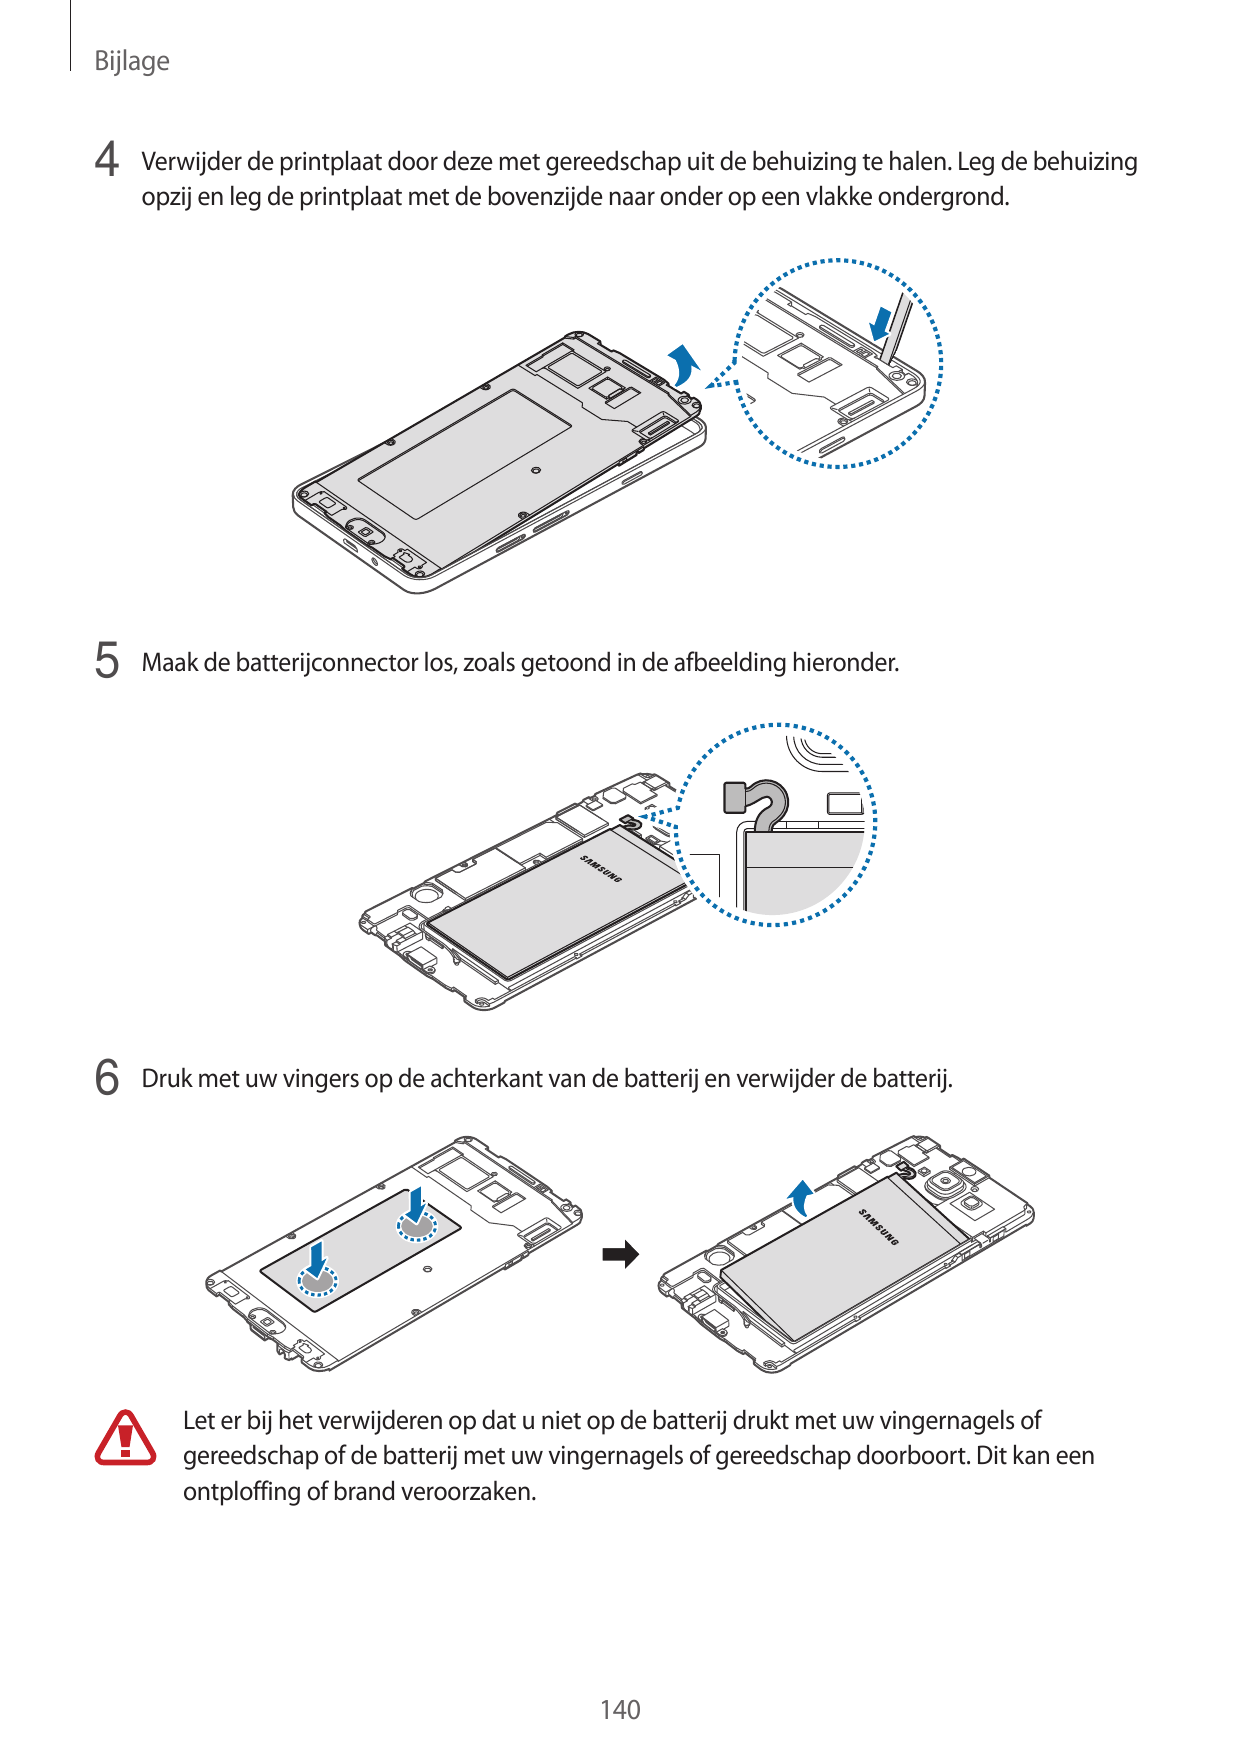 Bijlage4 Verwijder de printplaat door deze met gereedschap uit de behuizing te halen. Leg de behuizingopzij en leg de printplaat